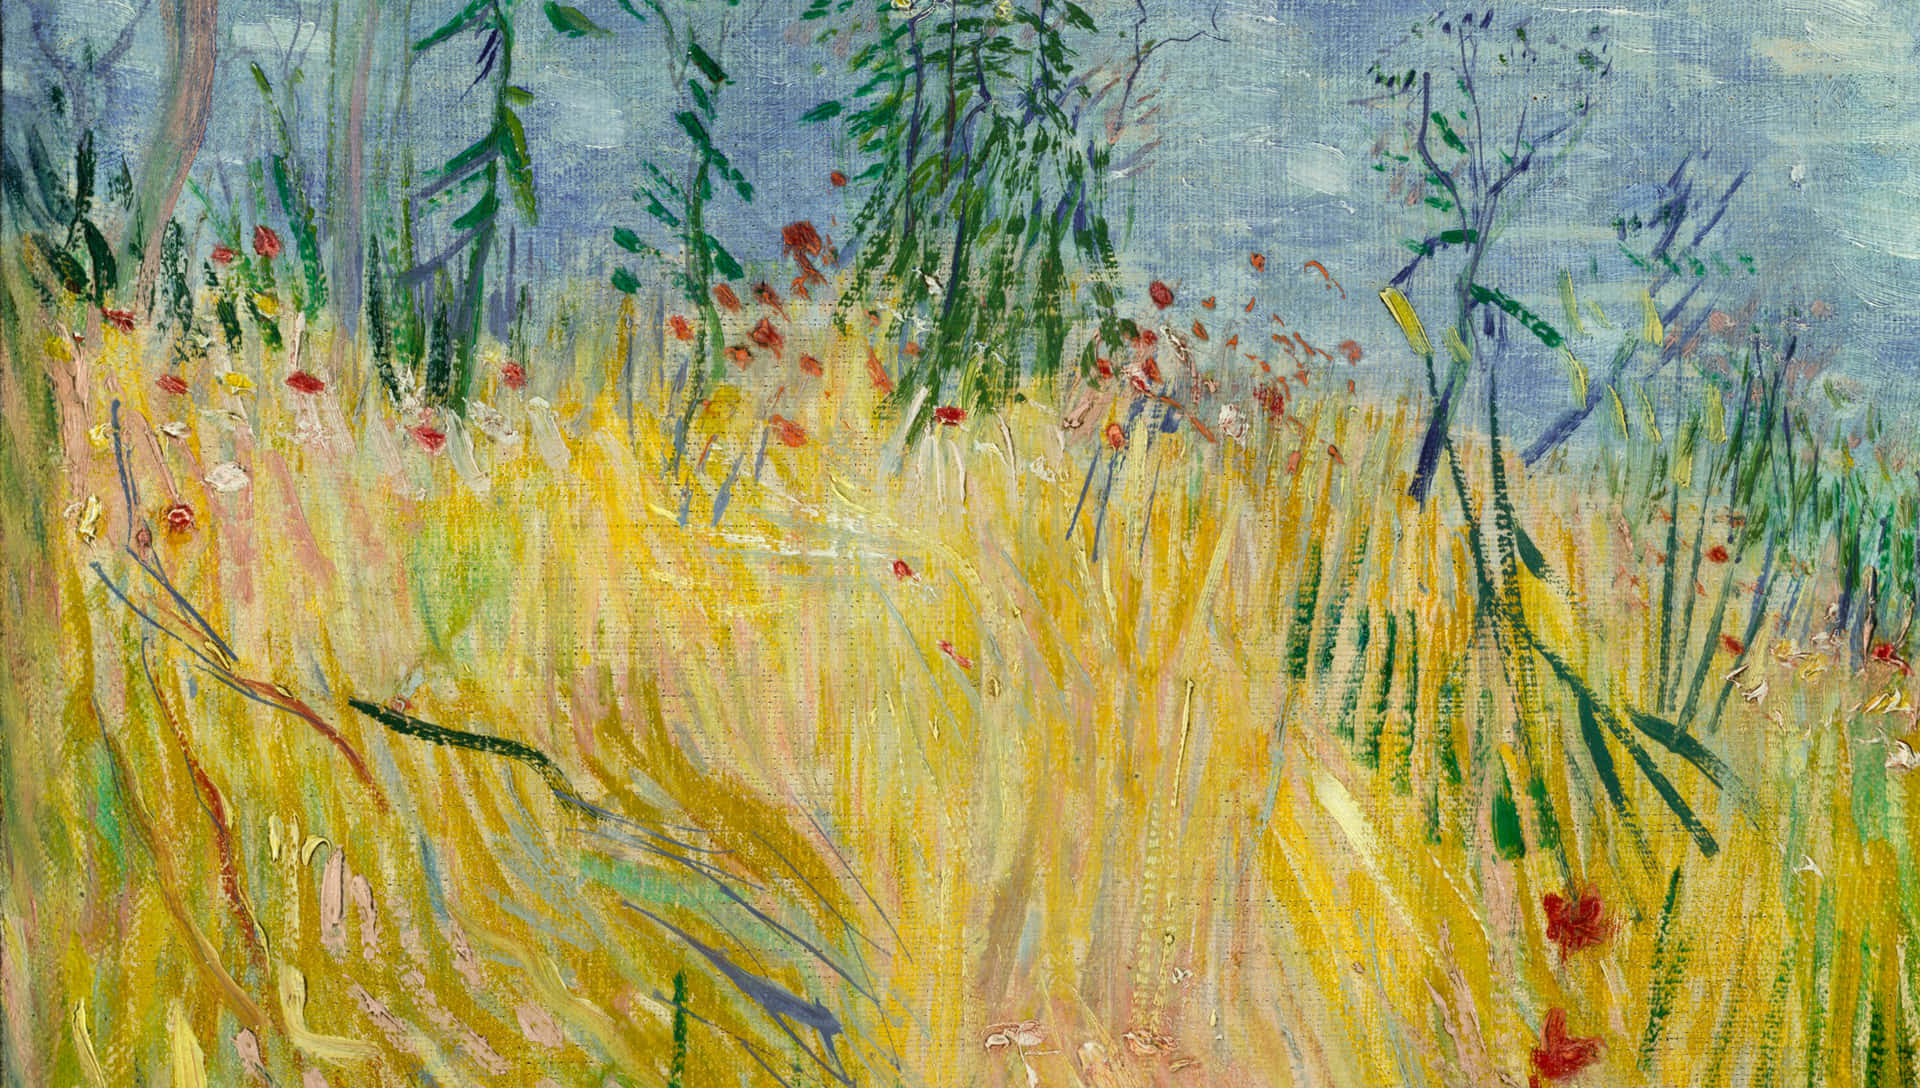 Enillustration Av Vincent Van Goghs Berömda Målning Stjärnklara Natt